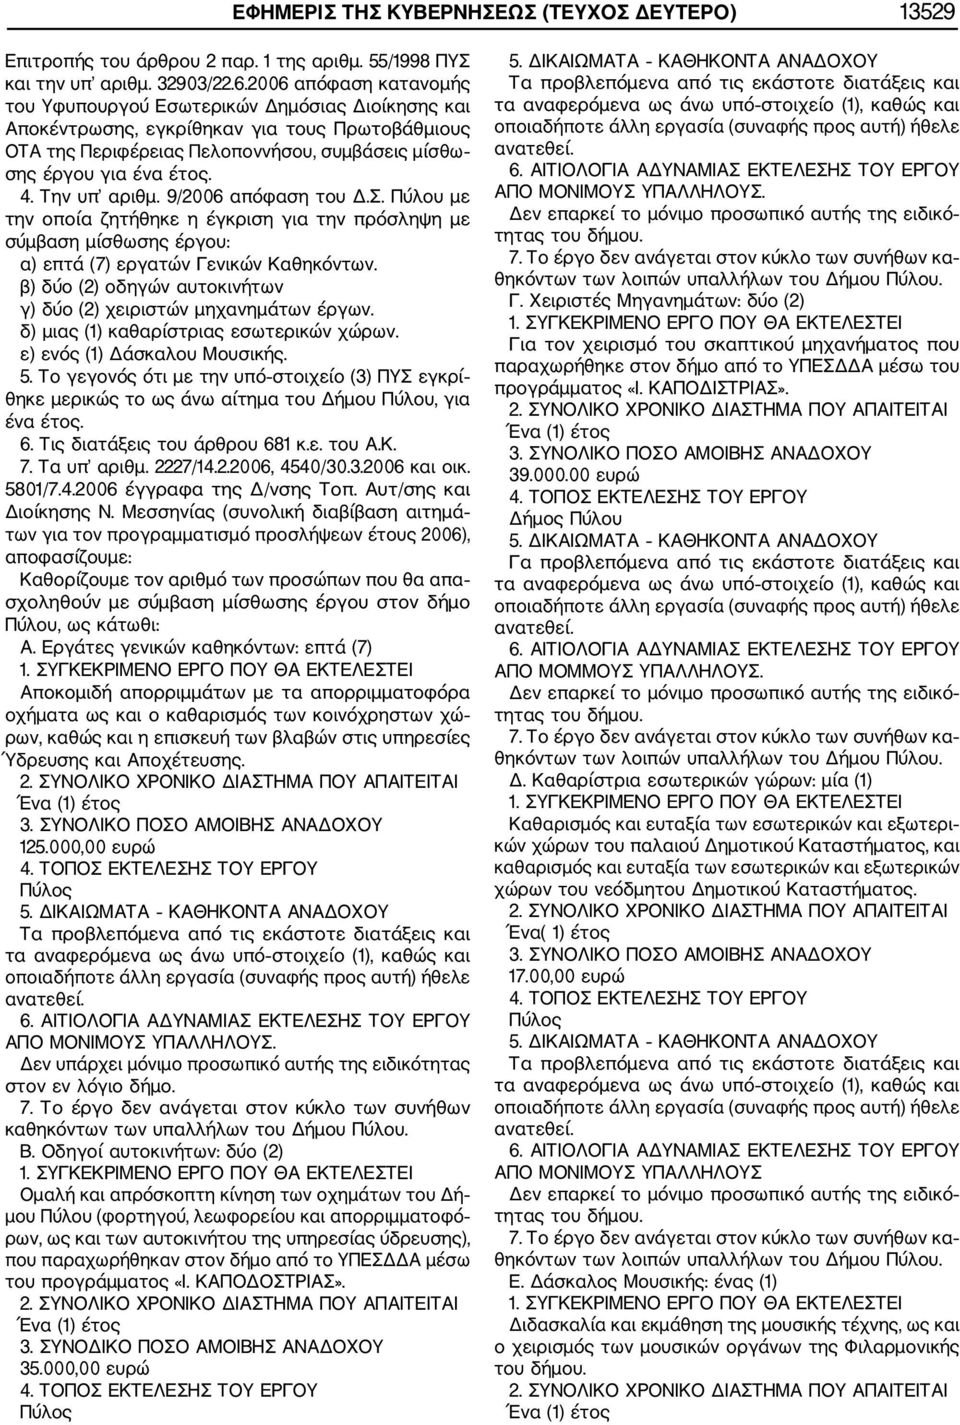 Την υπ αριθμ. 9/2006 απόφαση του Δ.Σ. Πύλου με την οποία ζητήθηκε η έγκριση για την πρόσληψη με σύμβαση μίσθωσης έργου: α) επτά (7) εργατών Γενικών Καθηκόντων.